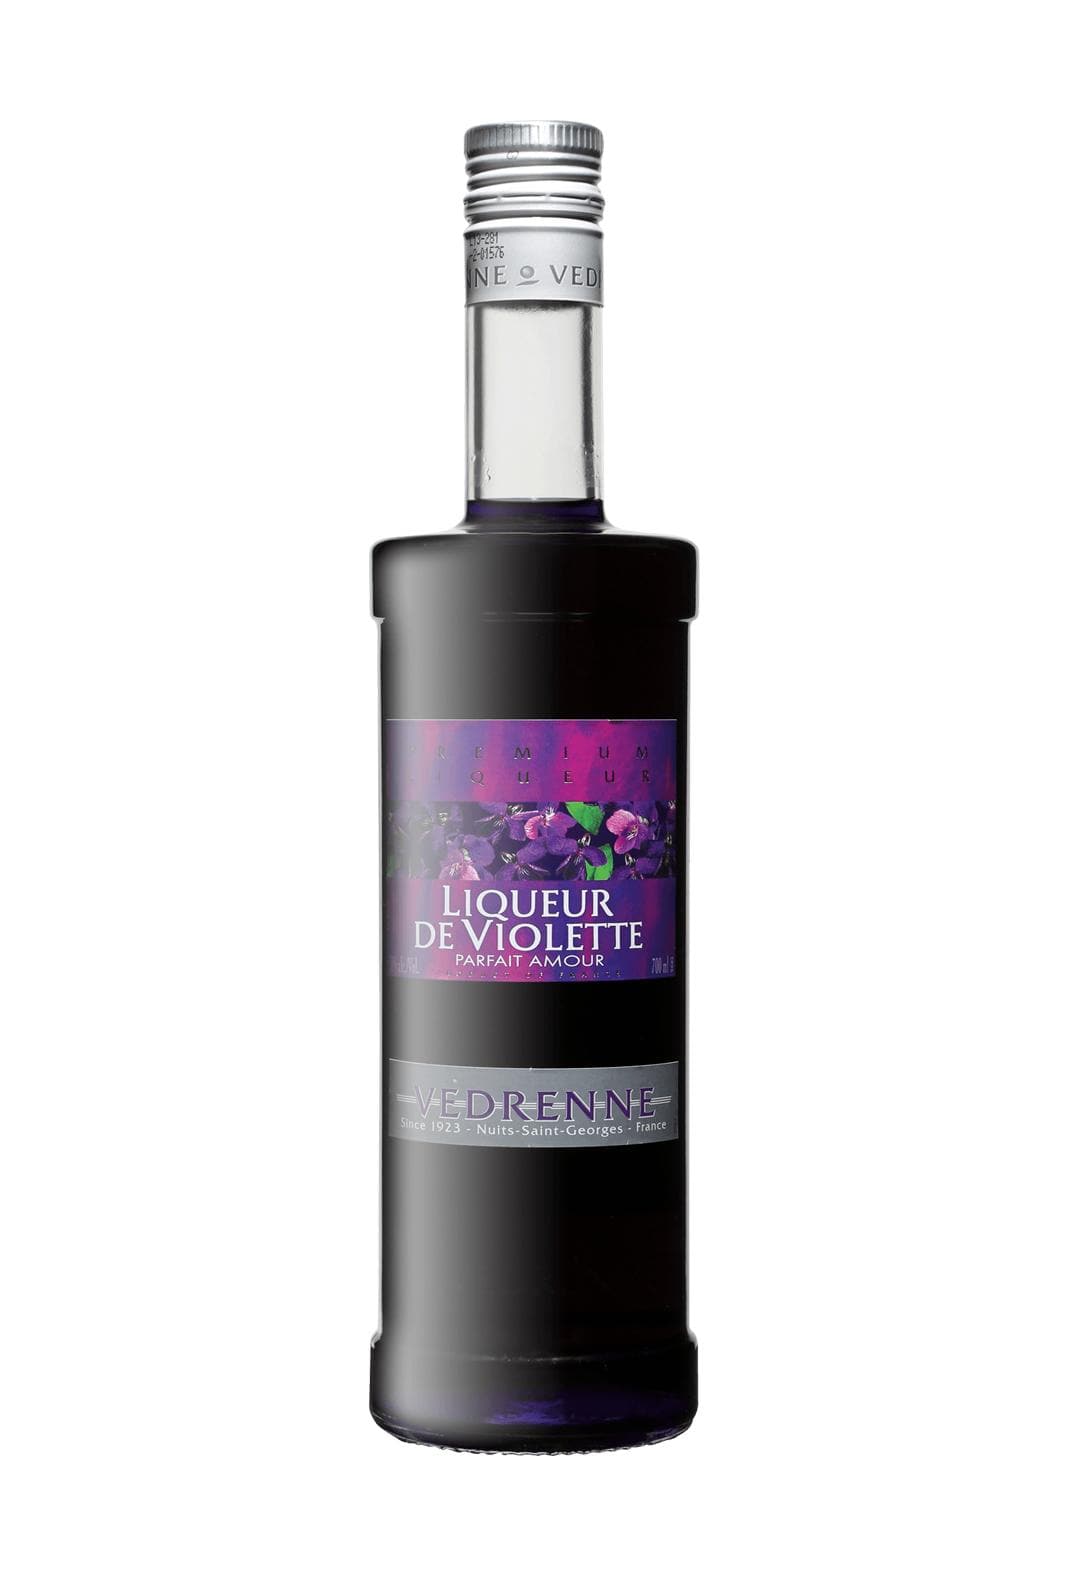 Vedrenne Liqueur de Violette (Violet)18% 700ml | Liqueurs | Shop online at Spirits of France